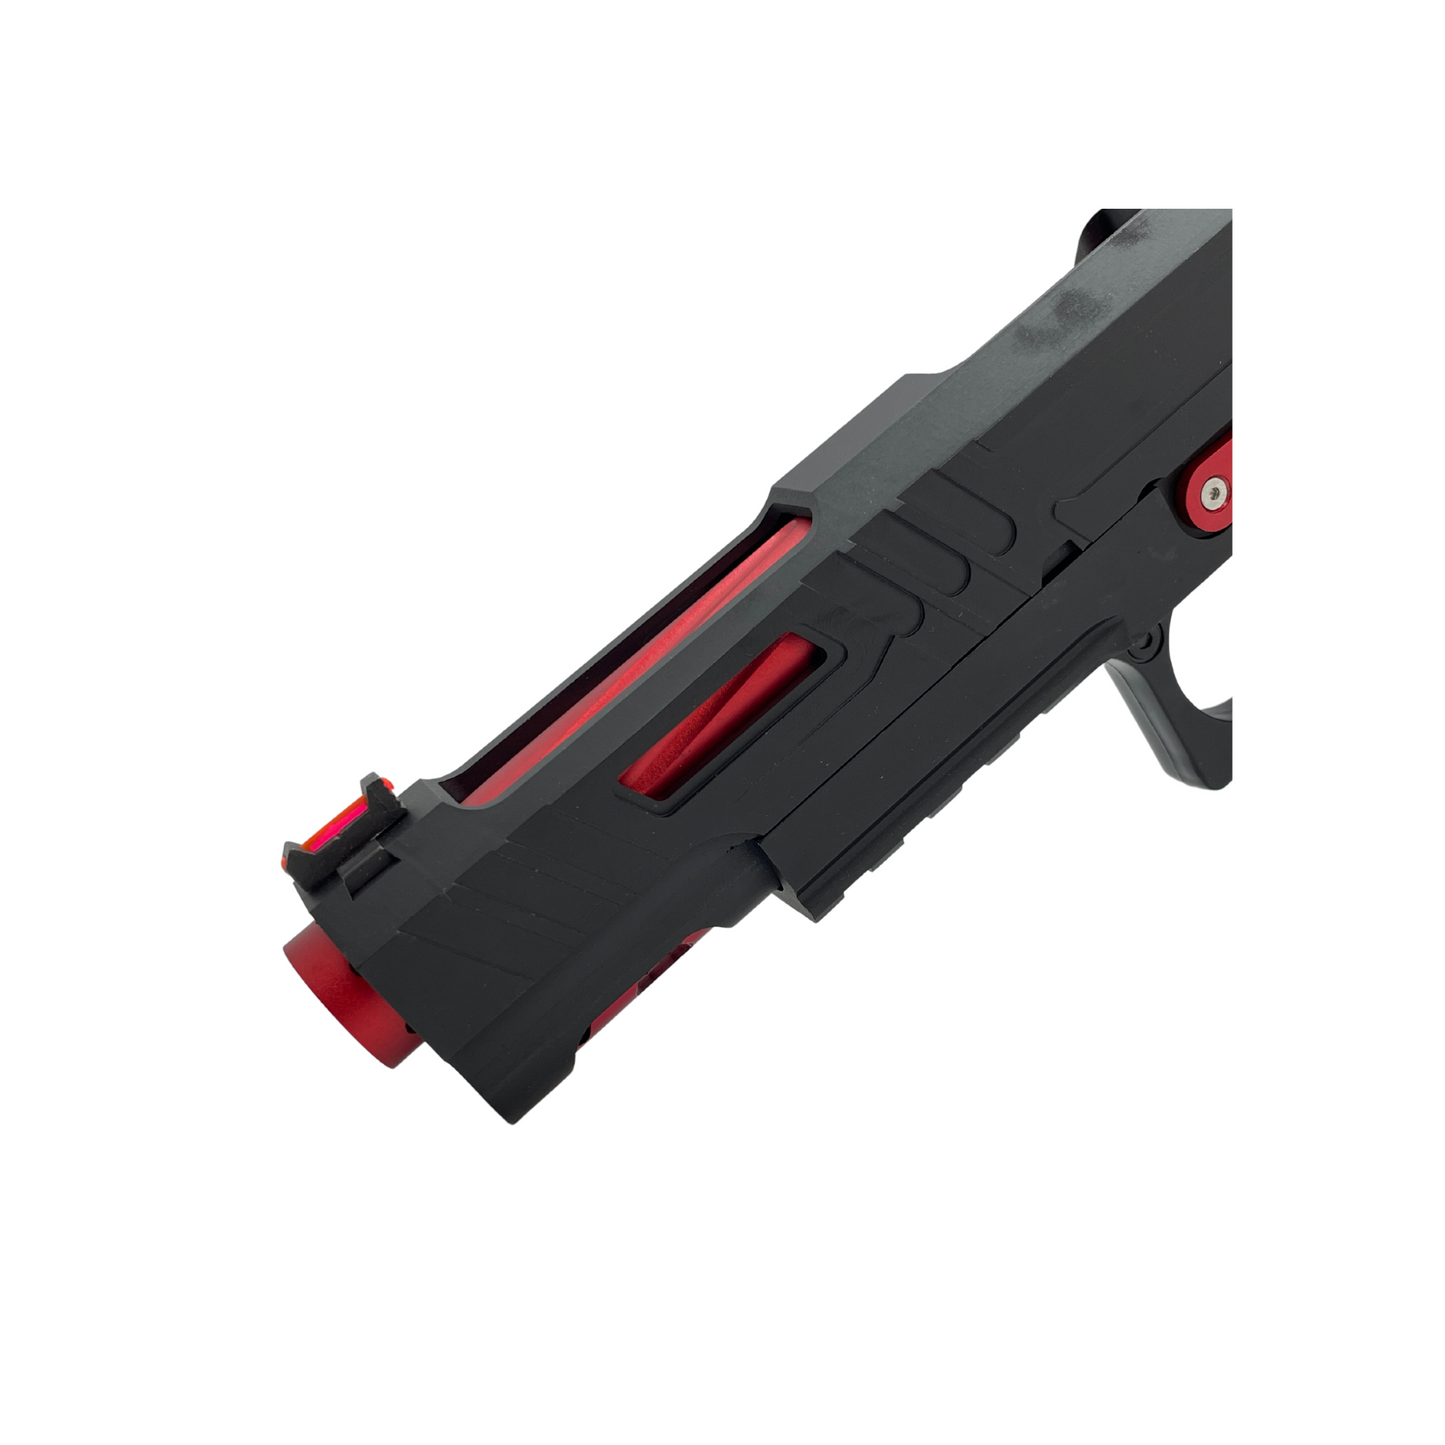 "Red Dead Redemption" 5.1 Competition Hi-Capa Pistol - Gel Blaster